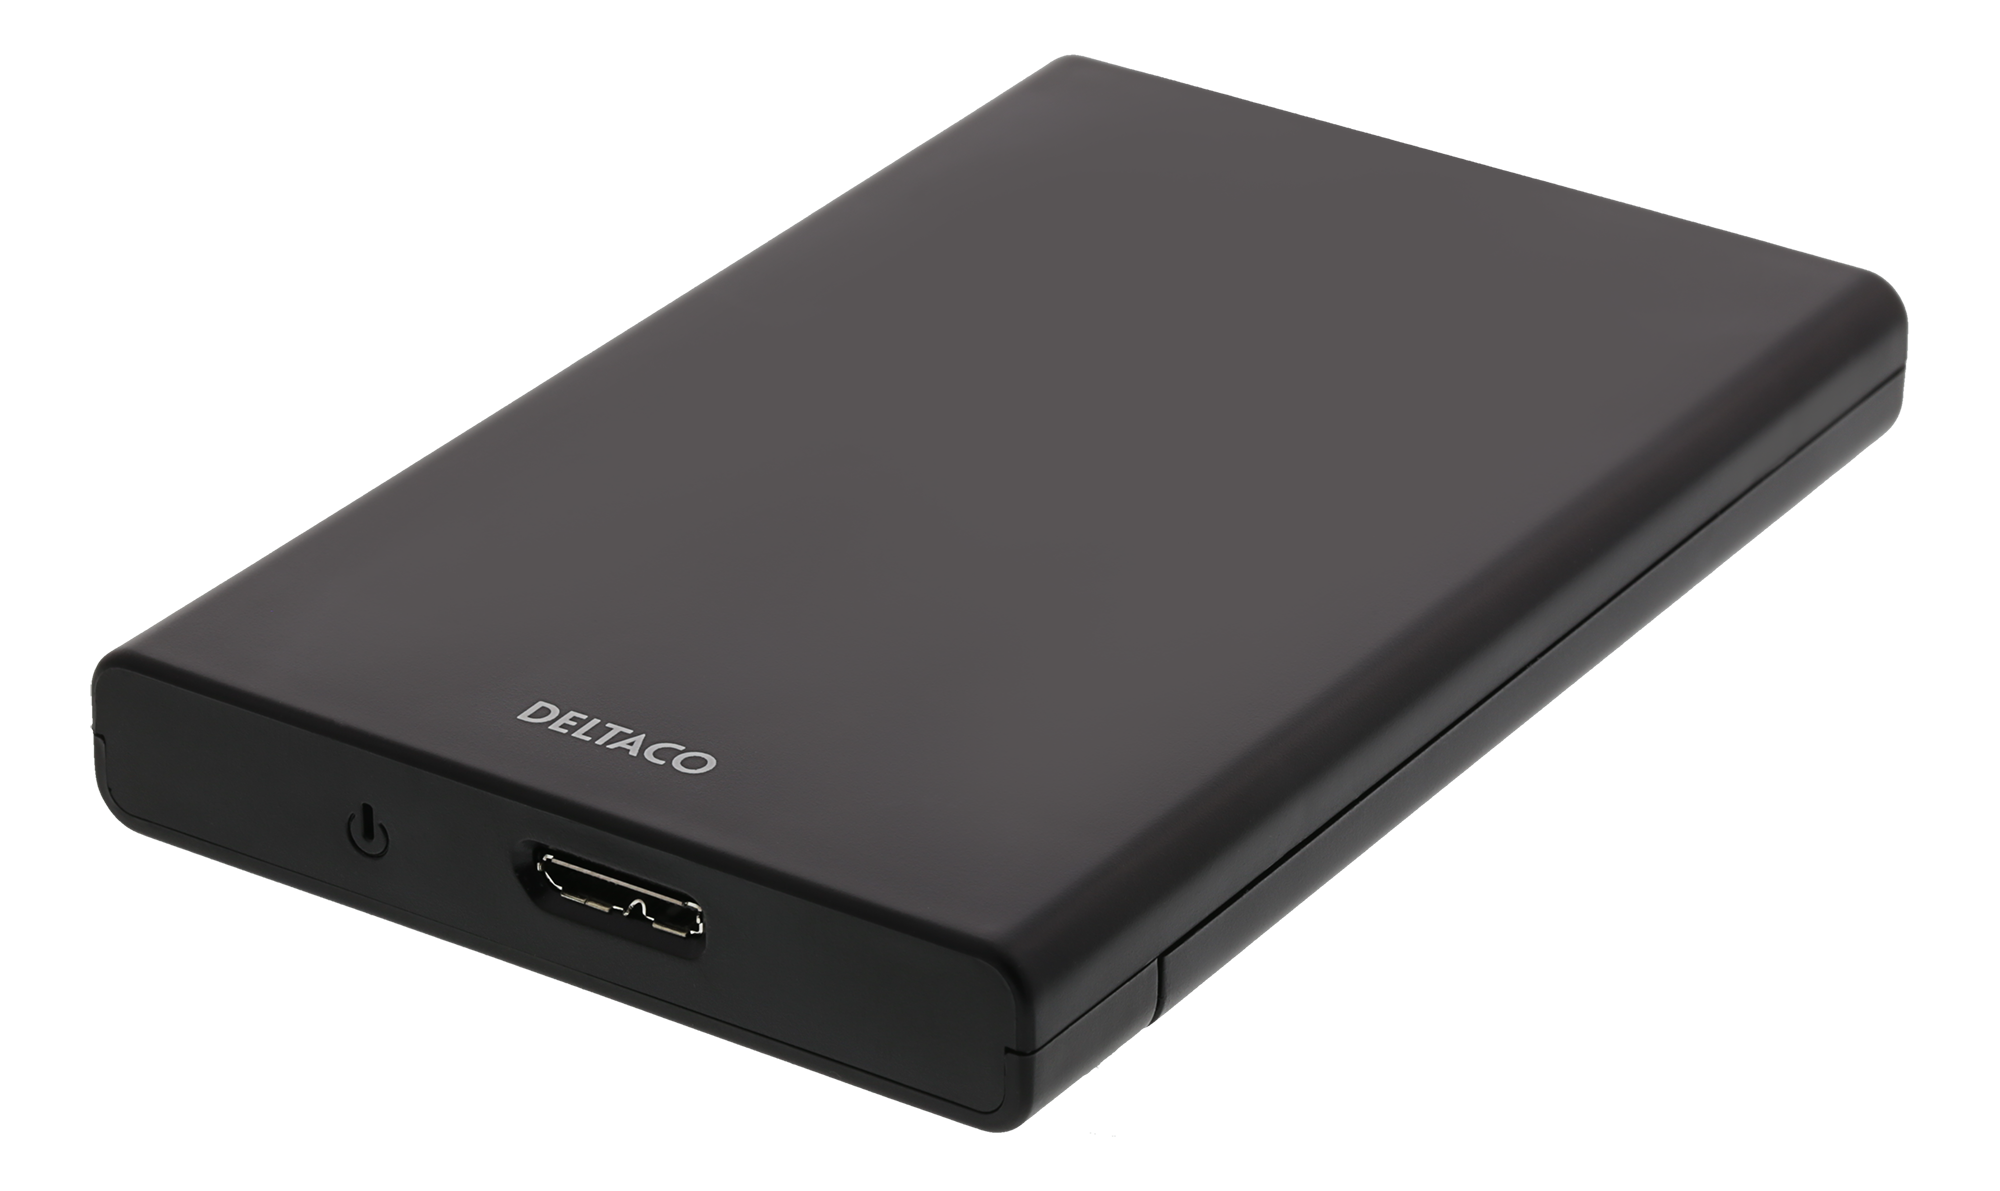 DELTACO ekstern harddisk kabinet, USB 3.0, skydedør, 2,5 "HDD, sort WATTOO.DK